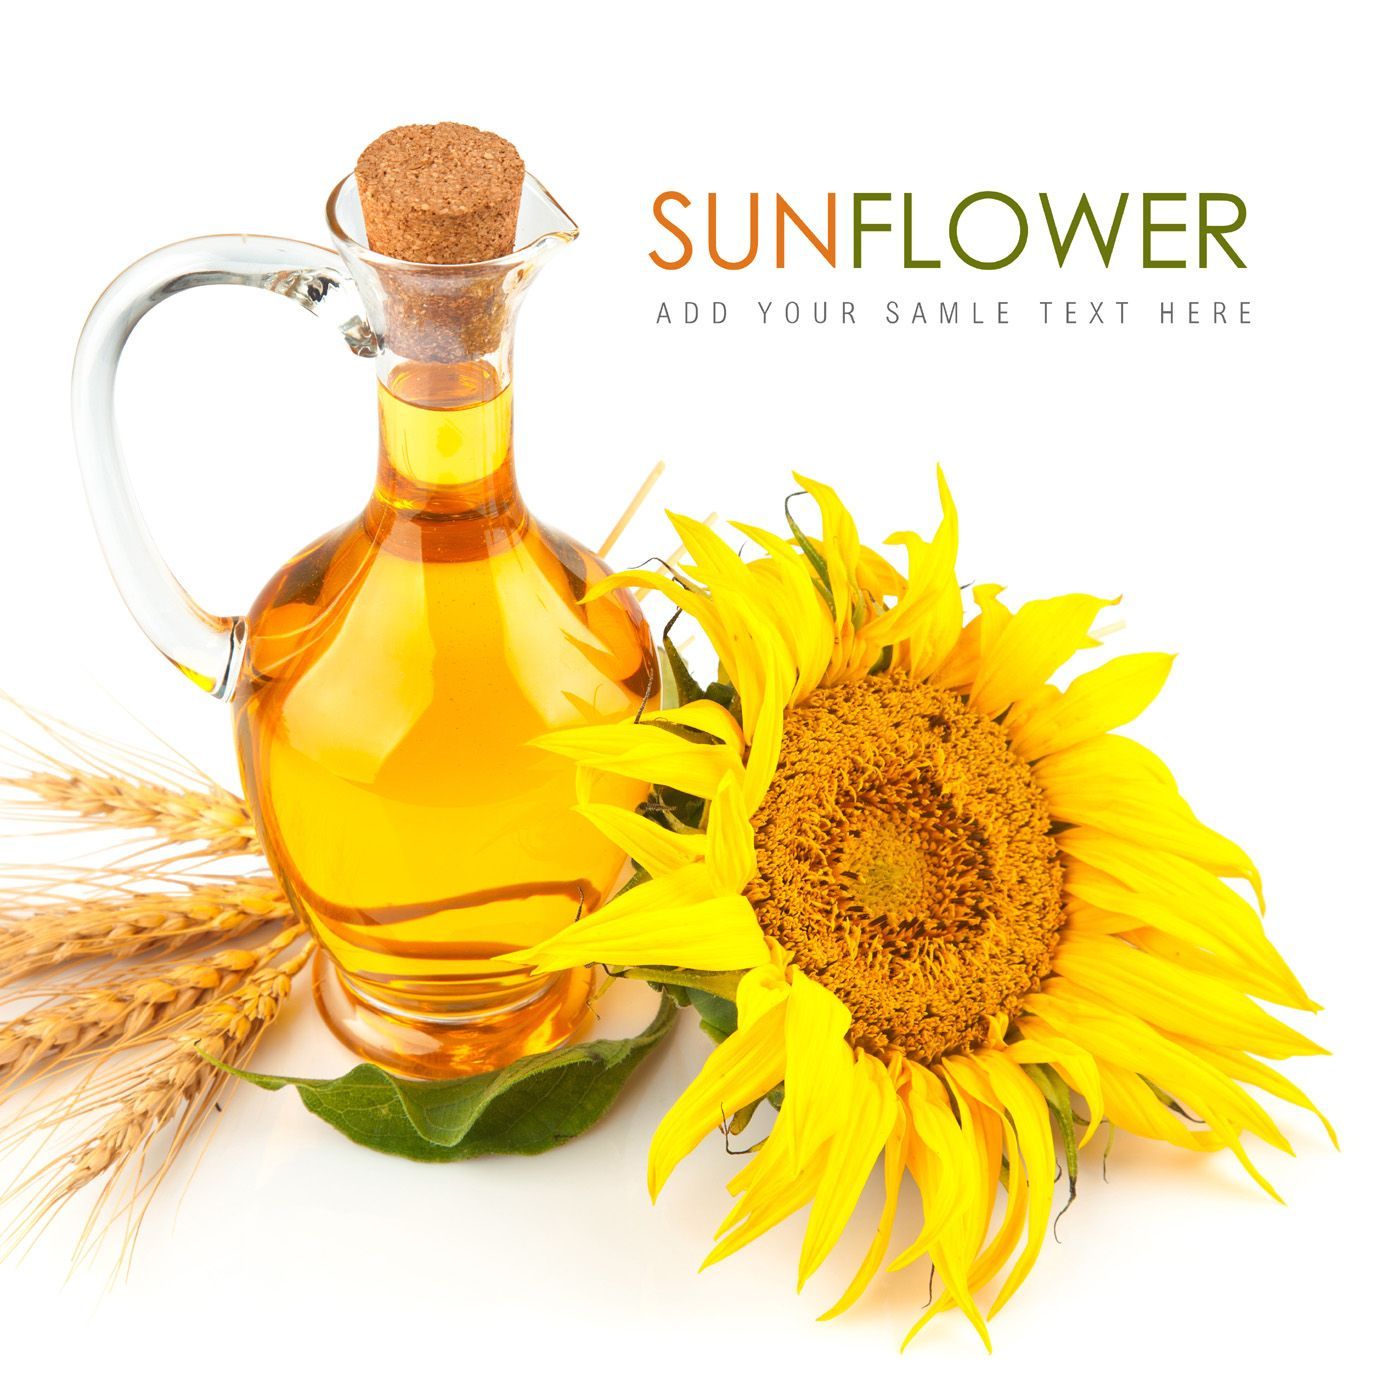 Sunflower oil 30930 / seasoning season. Essential oils for babies, Sunflower oil, Coconut oil for acne